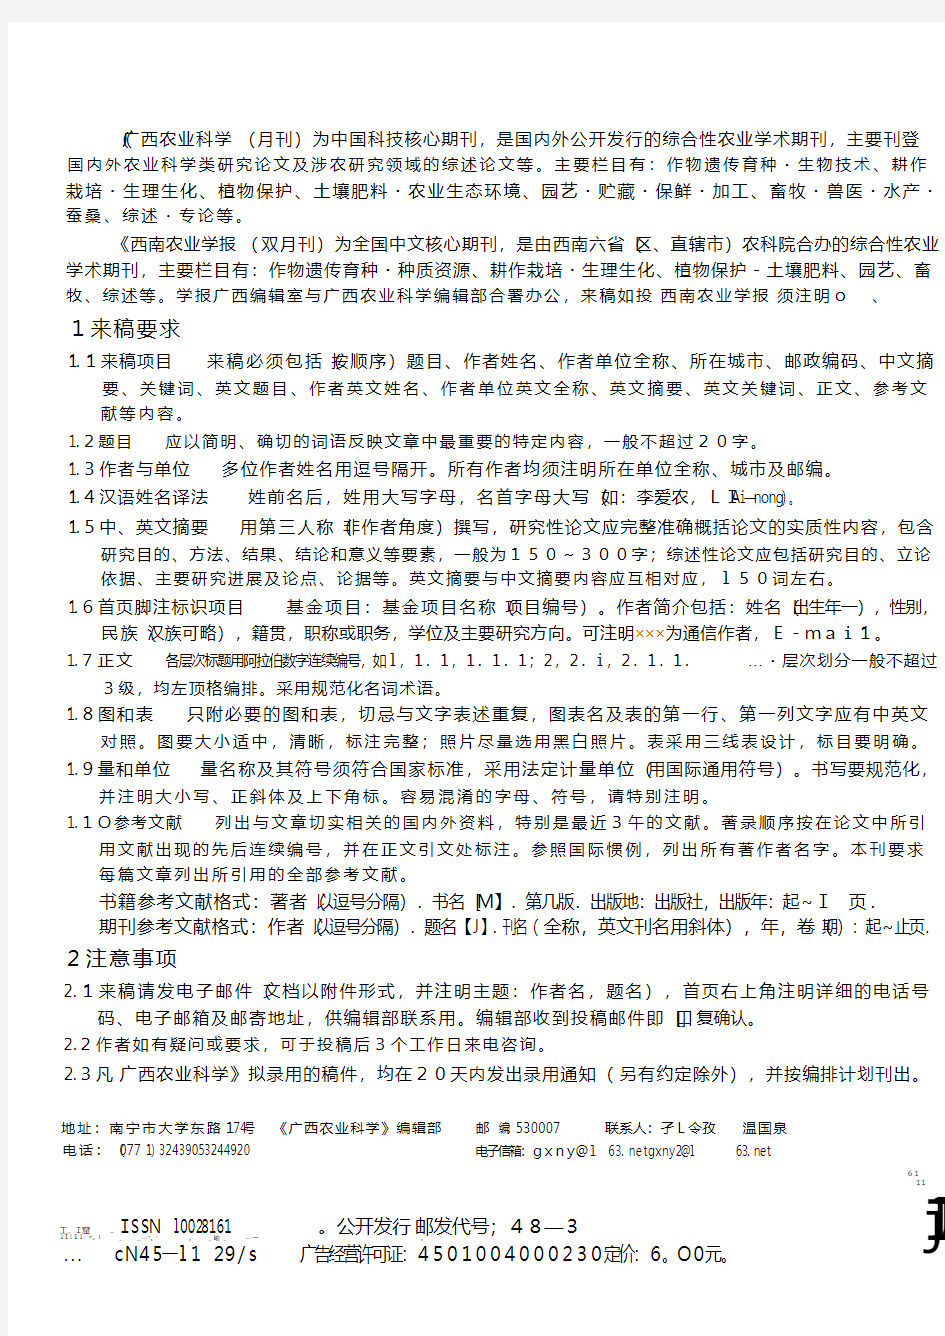 中国科技核心期刊——《广西农业科学》杂志 中文核心期刊——《西南农业学报》